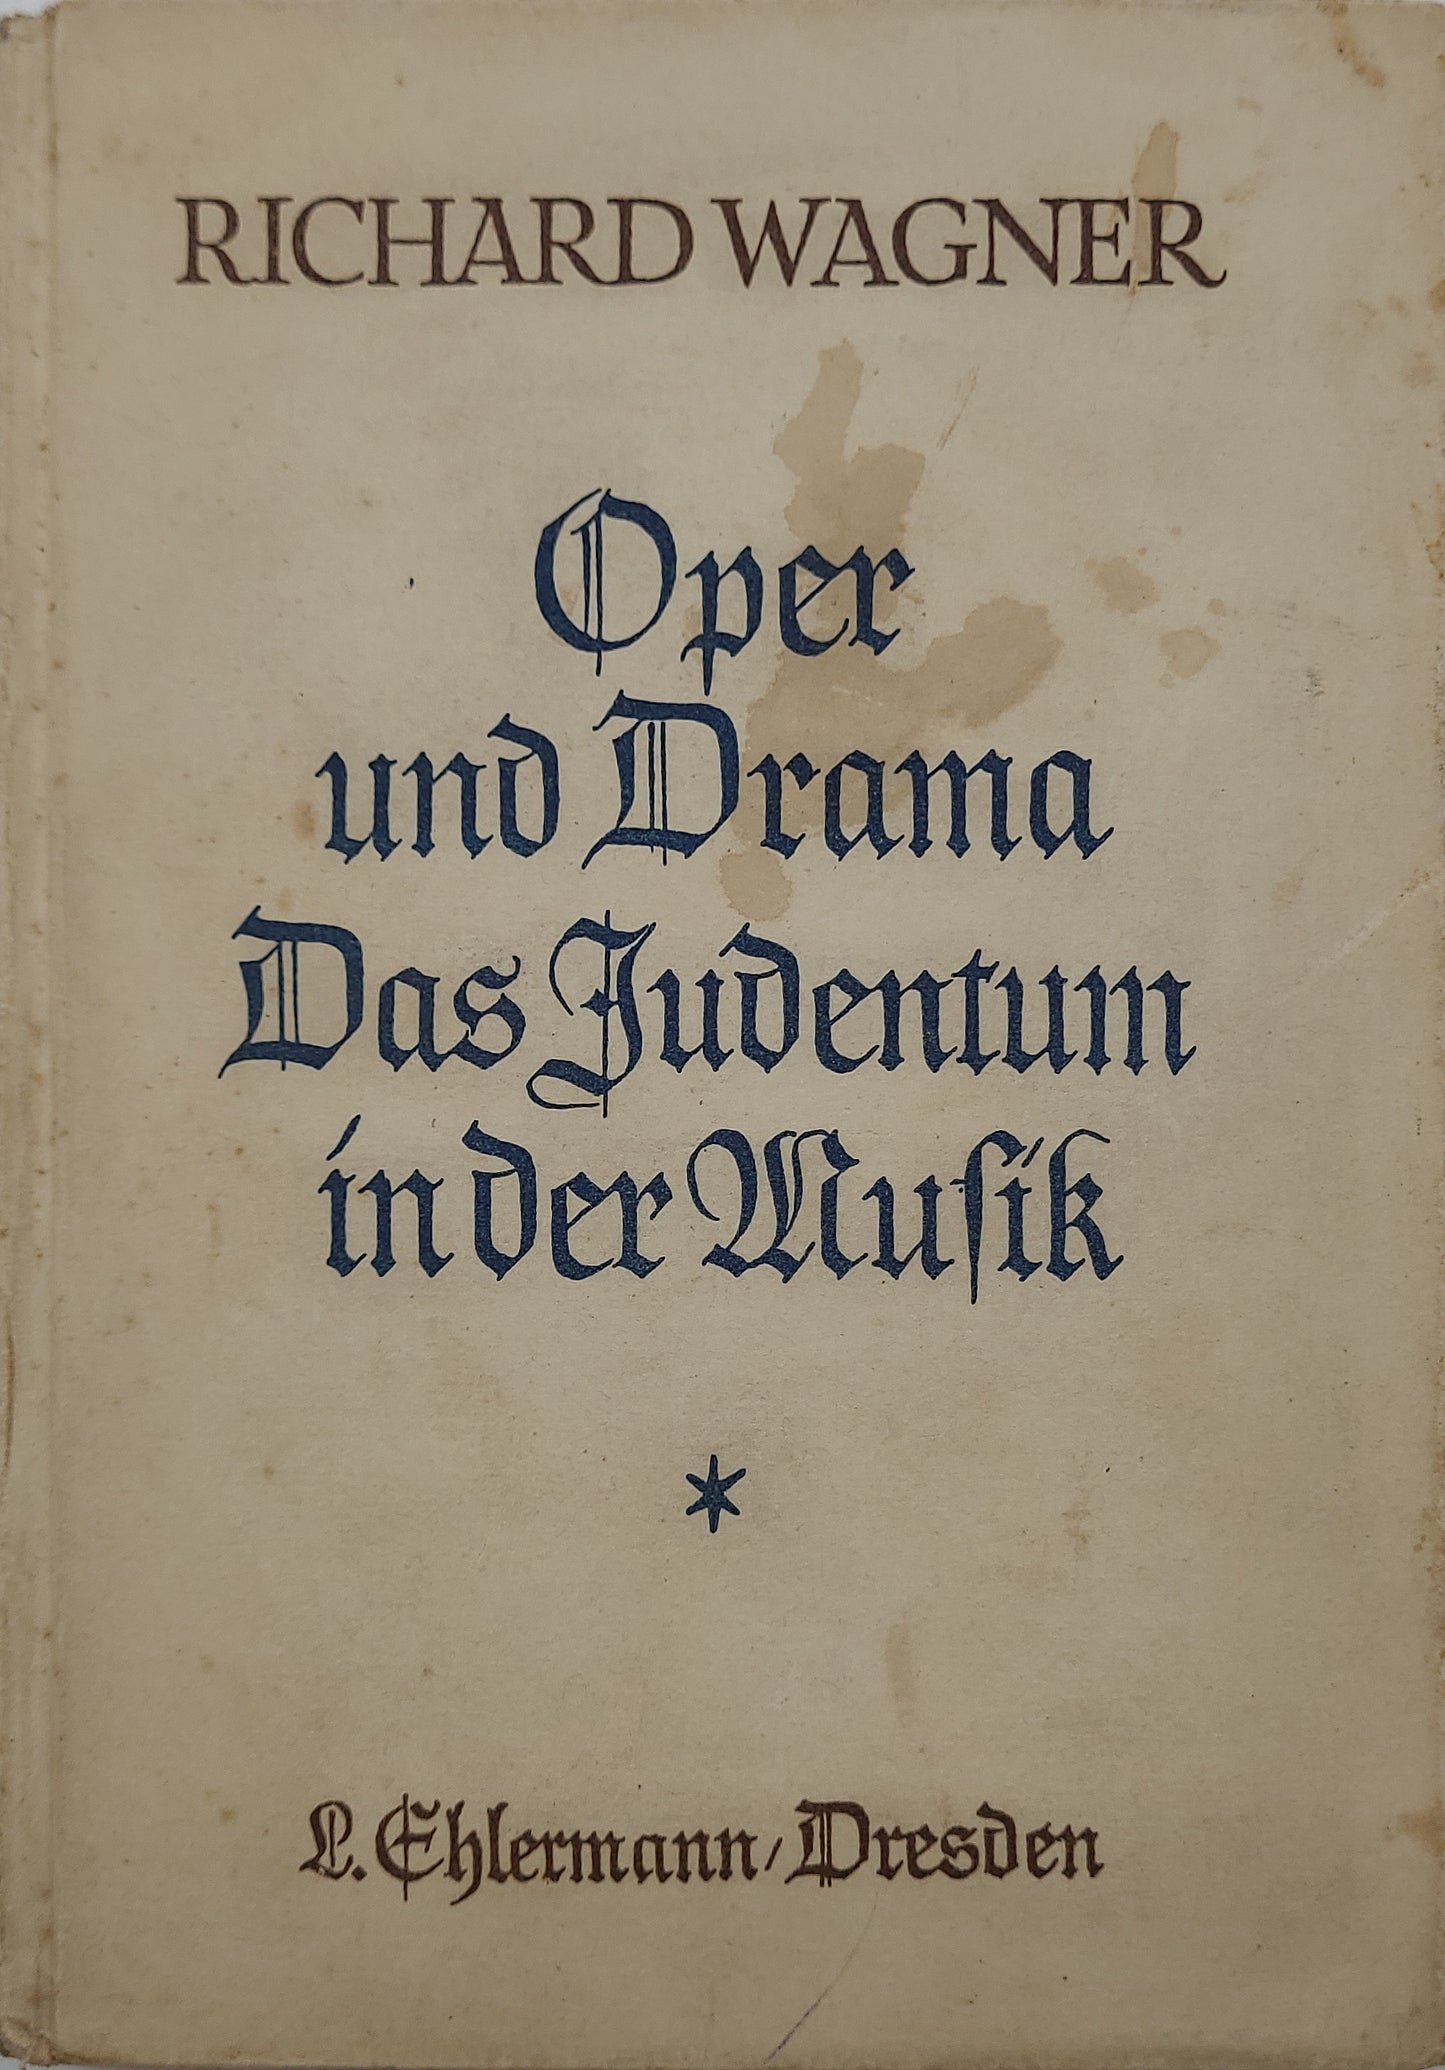 Oper und Drama; Das Judentum in der Musik